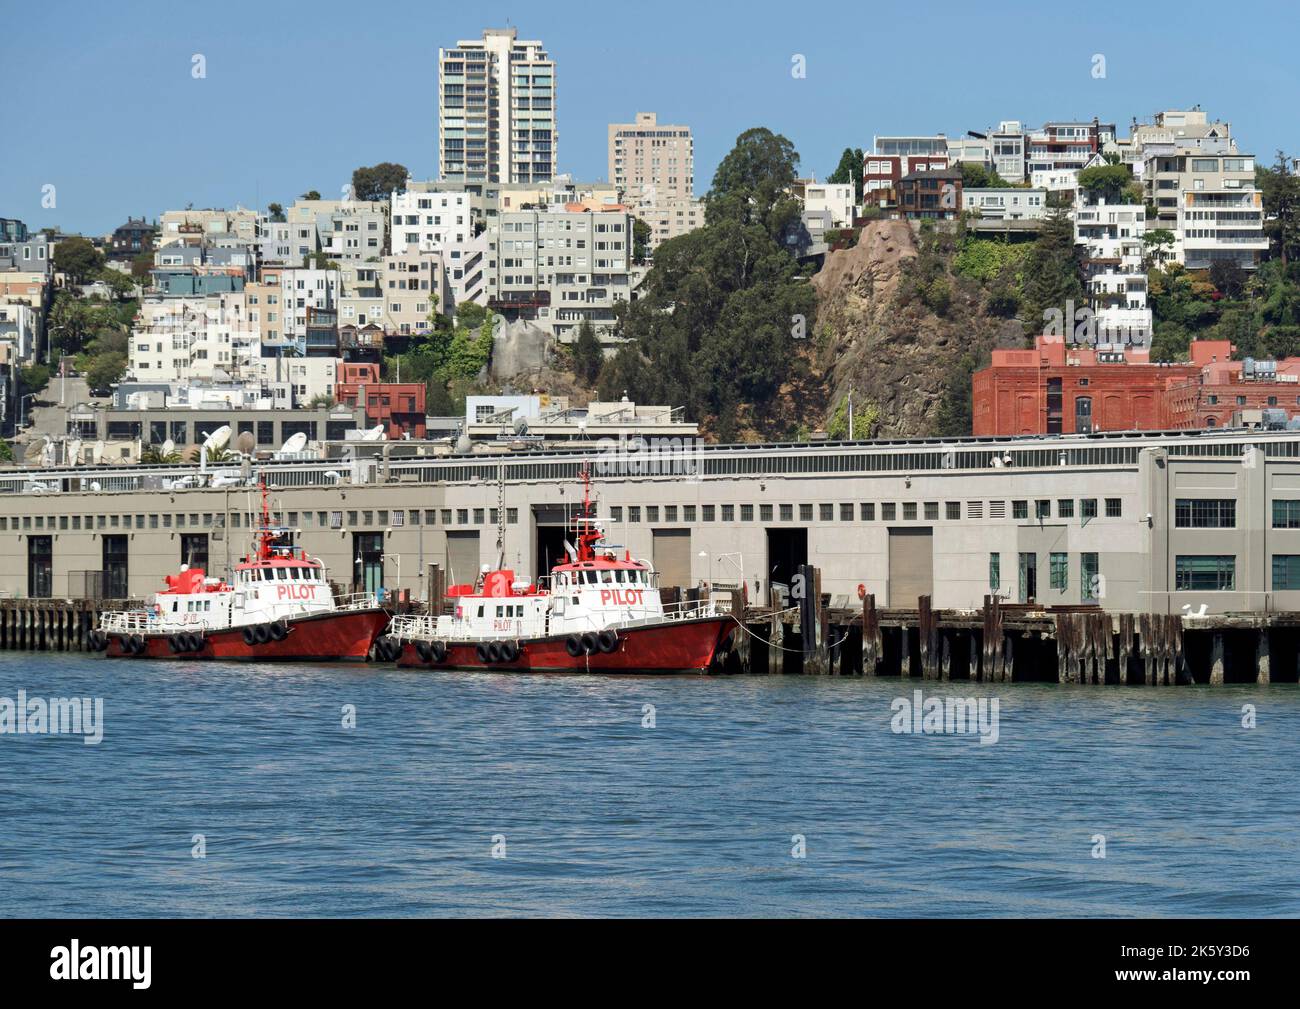 Lungomare di San Francisco con battelli pilota al Molo 9 e zona residenziale della città, oltre che da un traghetto che approda al Ferry Building. Foto Stock